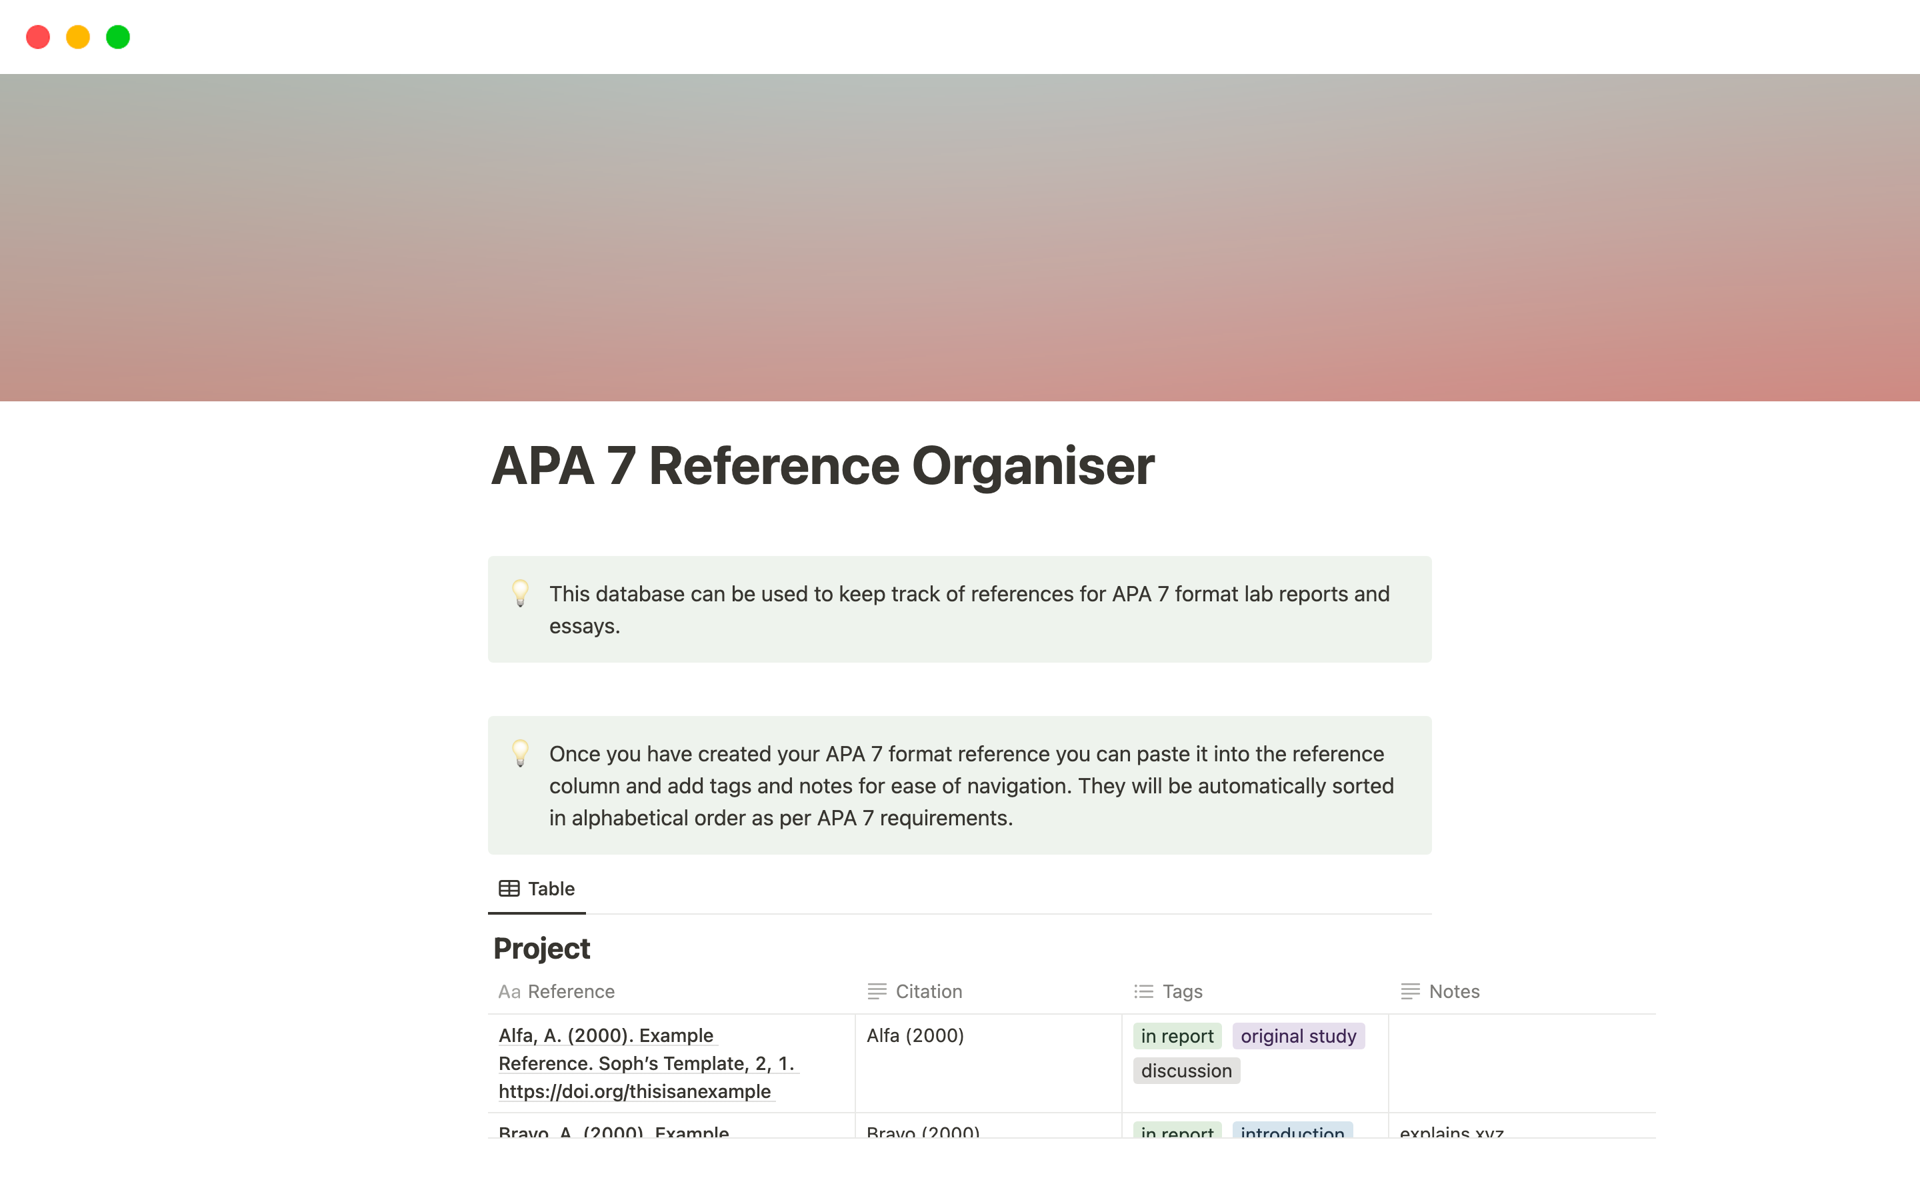 Vista previa de plantilla para APA 7 Reference Organiser